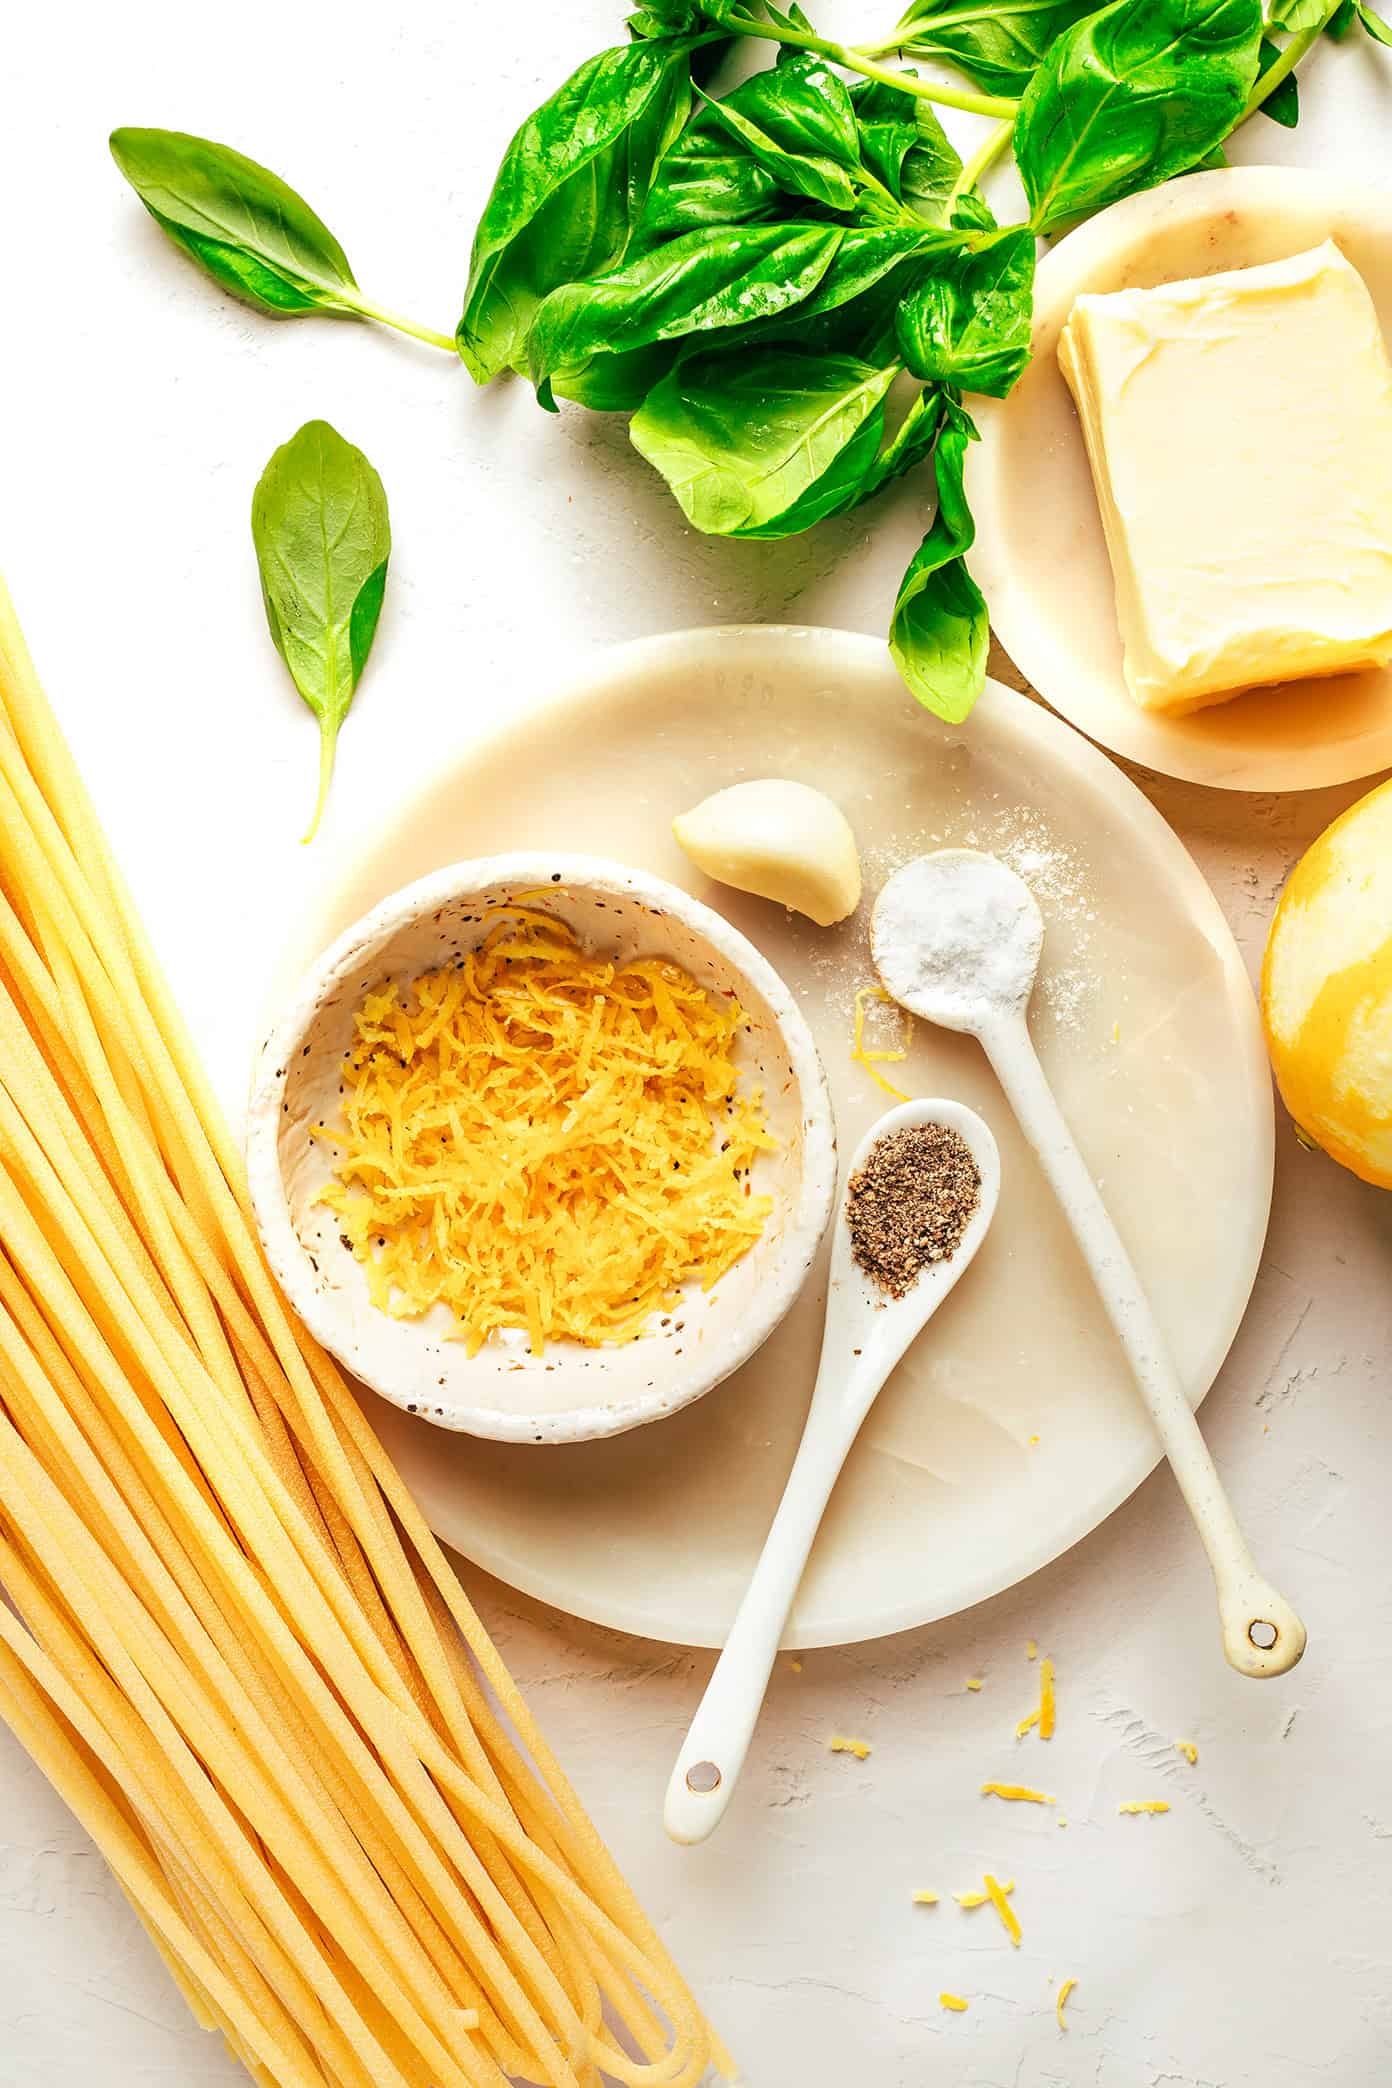 Lemon basil butter pasta ingredients